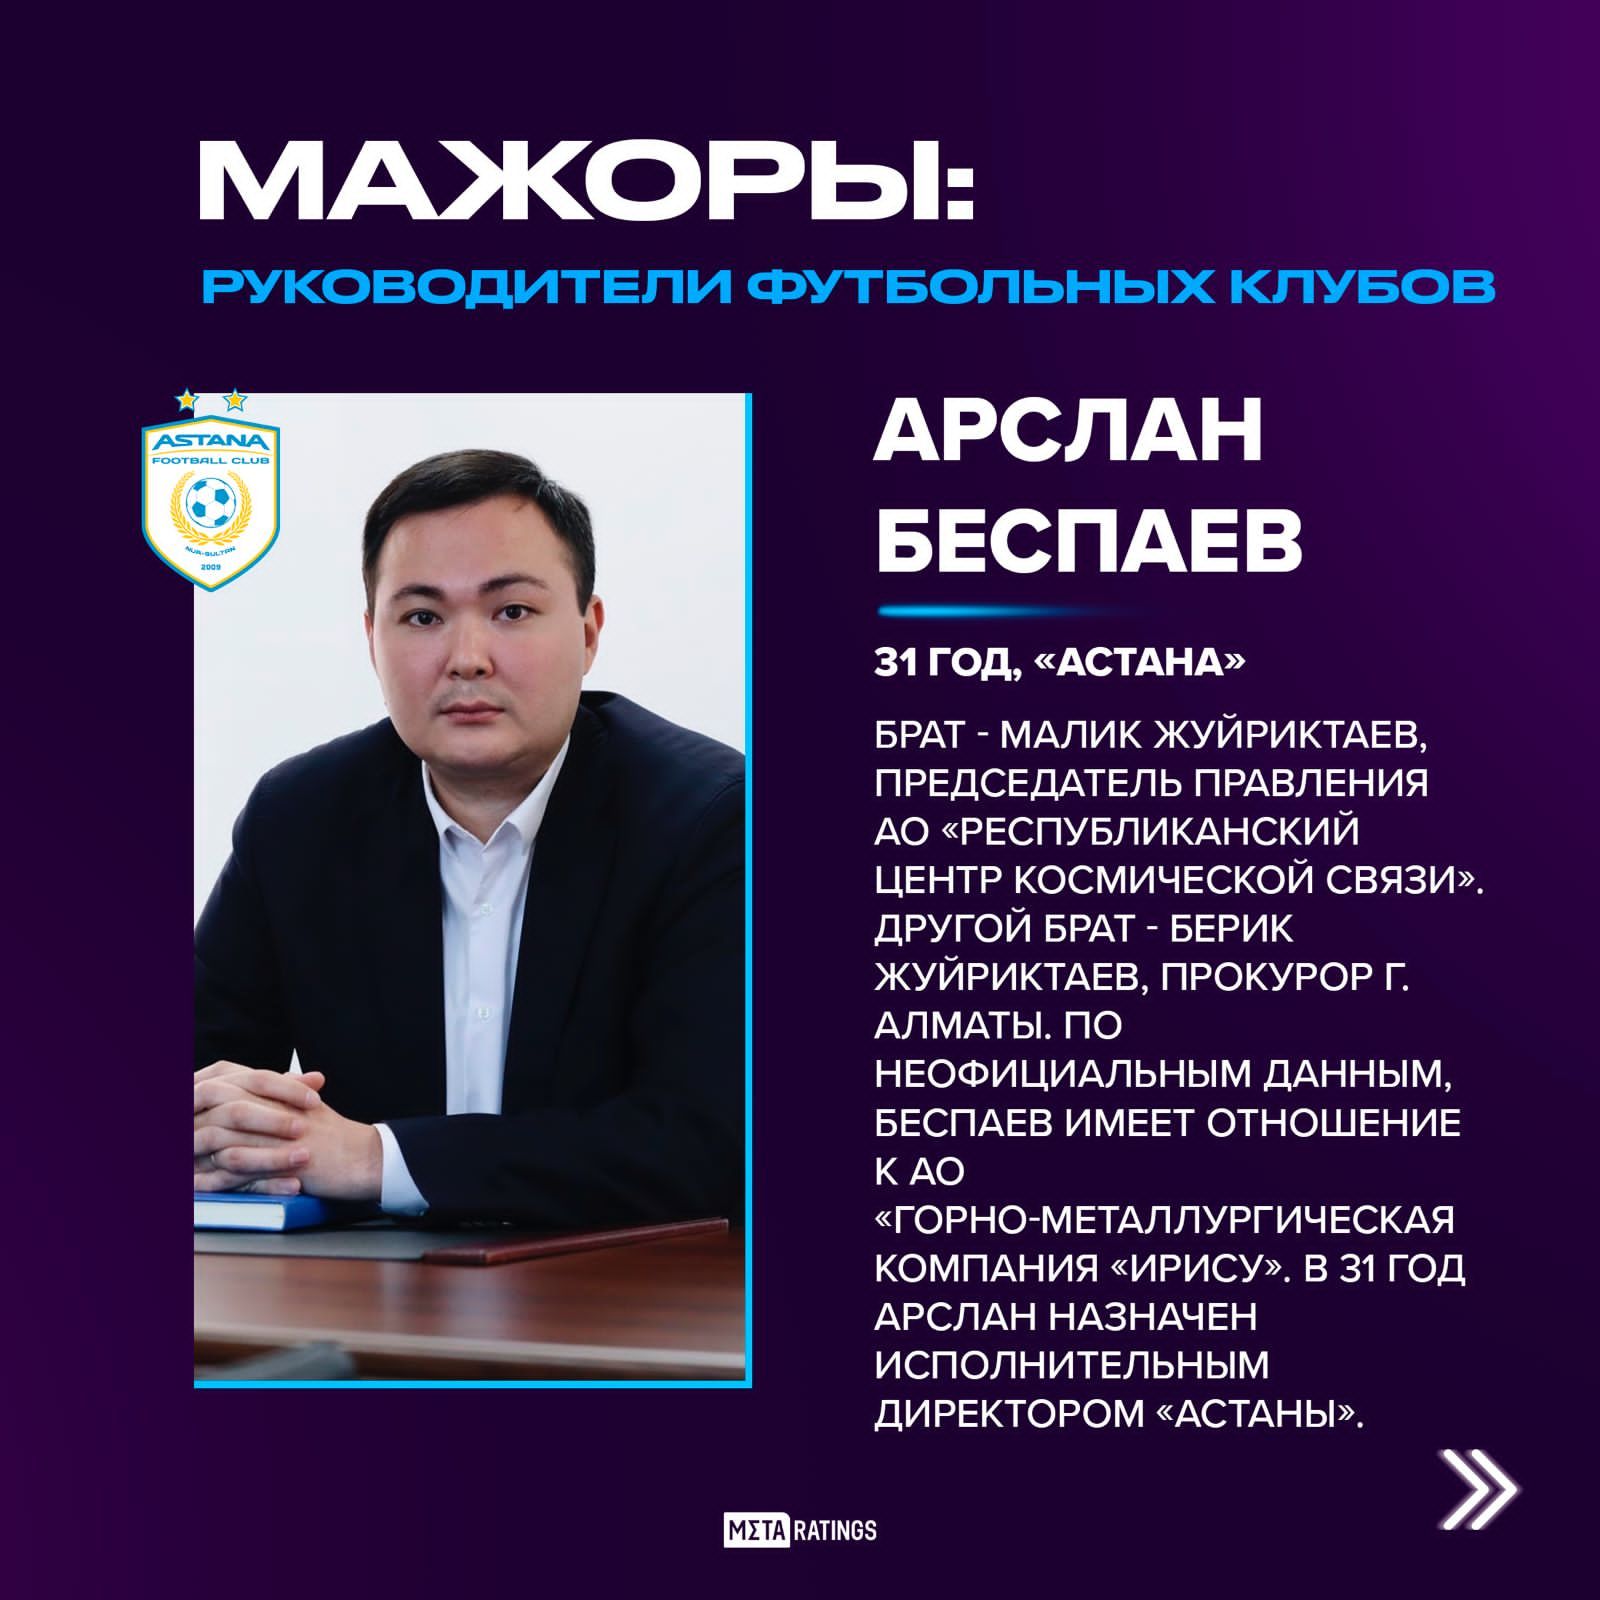 Арслан Беспаев